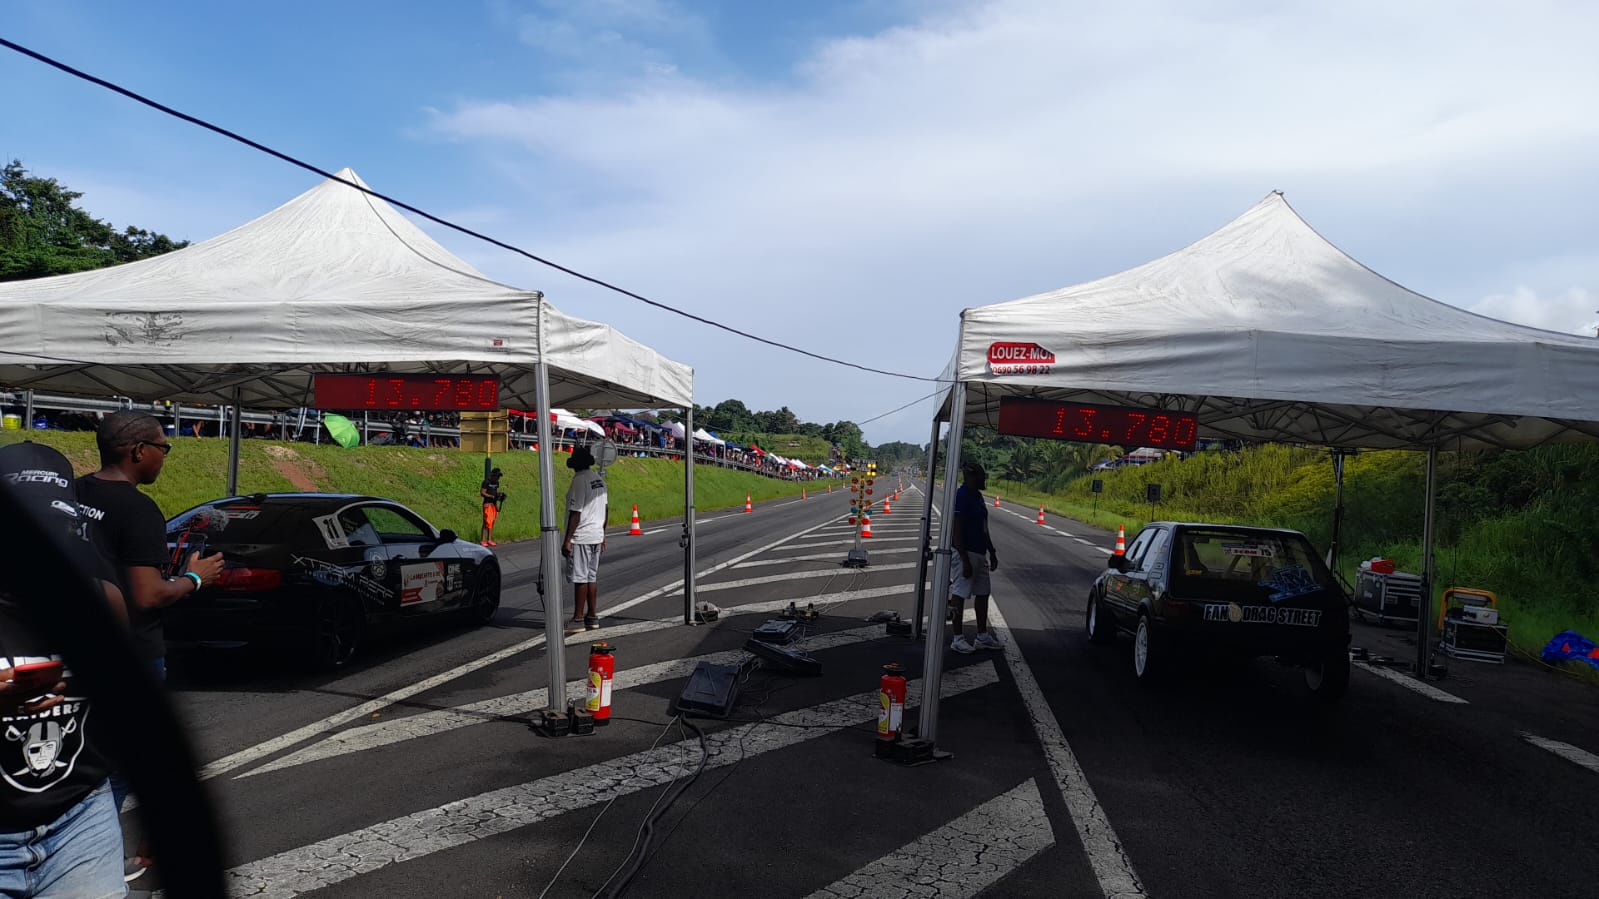     Plus de 70 pilotes au 69ème Run Trophy automobile en Guadeloupe

